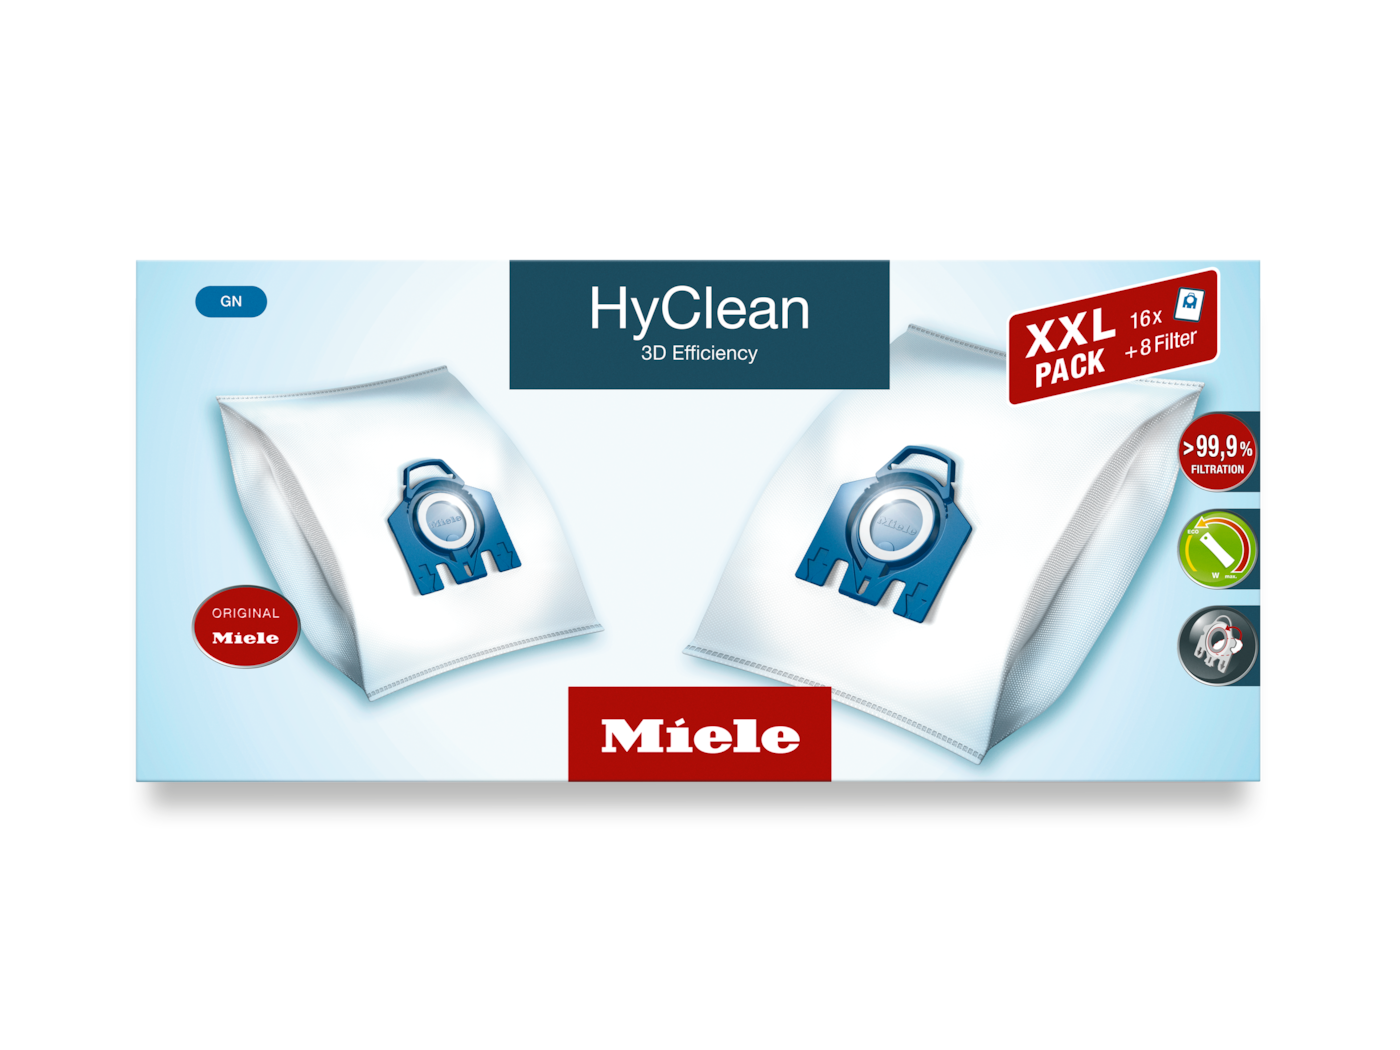 GN XXL HyClean 3D - Упаковка XXL мешков-пылесборников HyClean 3D Efficiency GN 